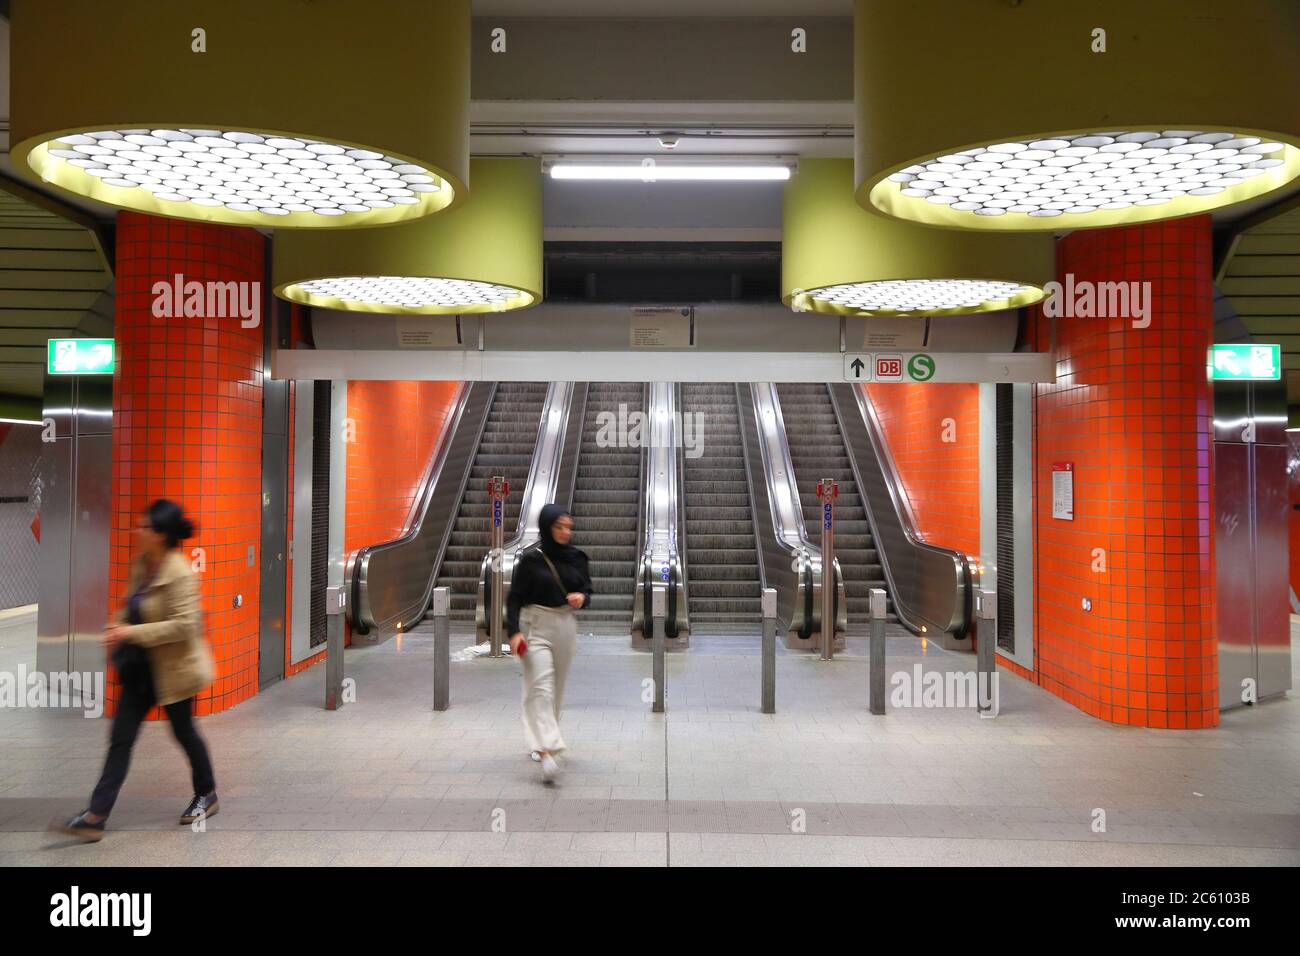 NUREMBERG, ALLEMAGNE - 6 MAI 2018: Station de métro de transport local VAG à Nuremberg, Allemagne. Nuremberg est situé dans la moyenne-Franconie. 511,628 Banque D'Images